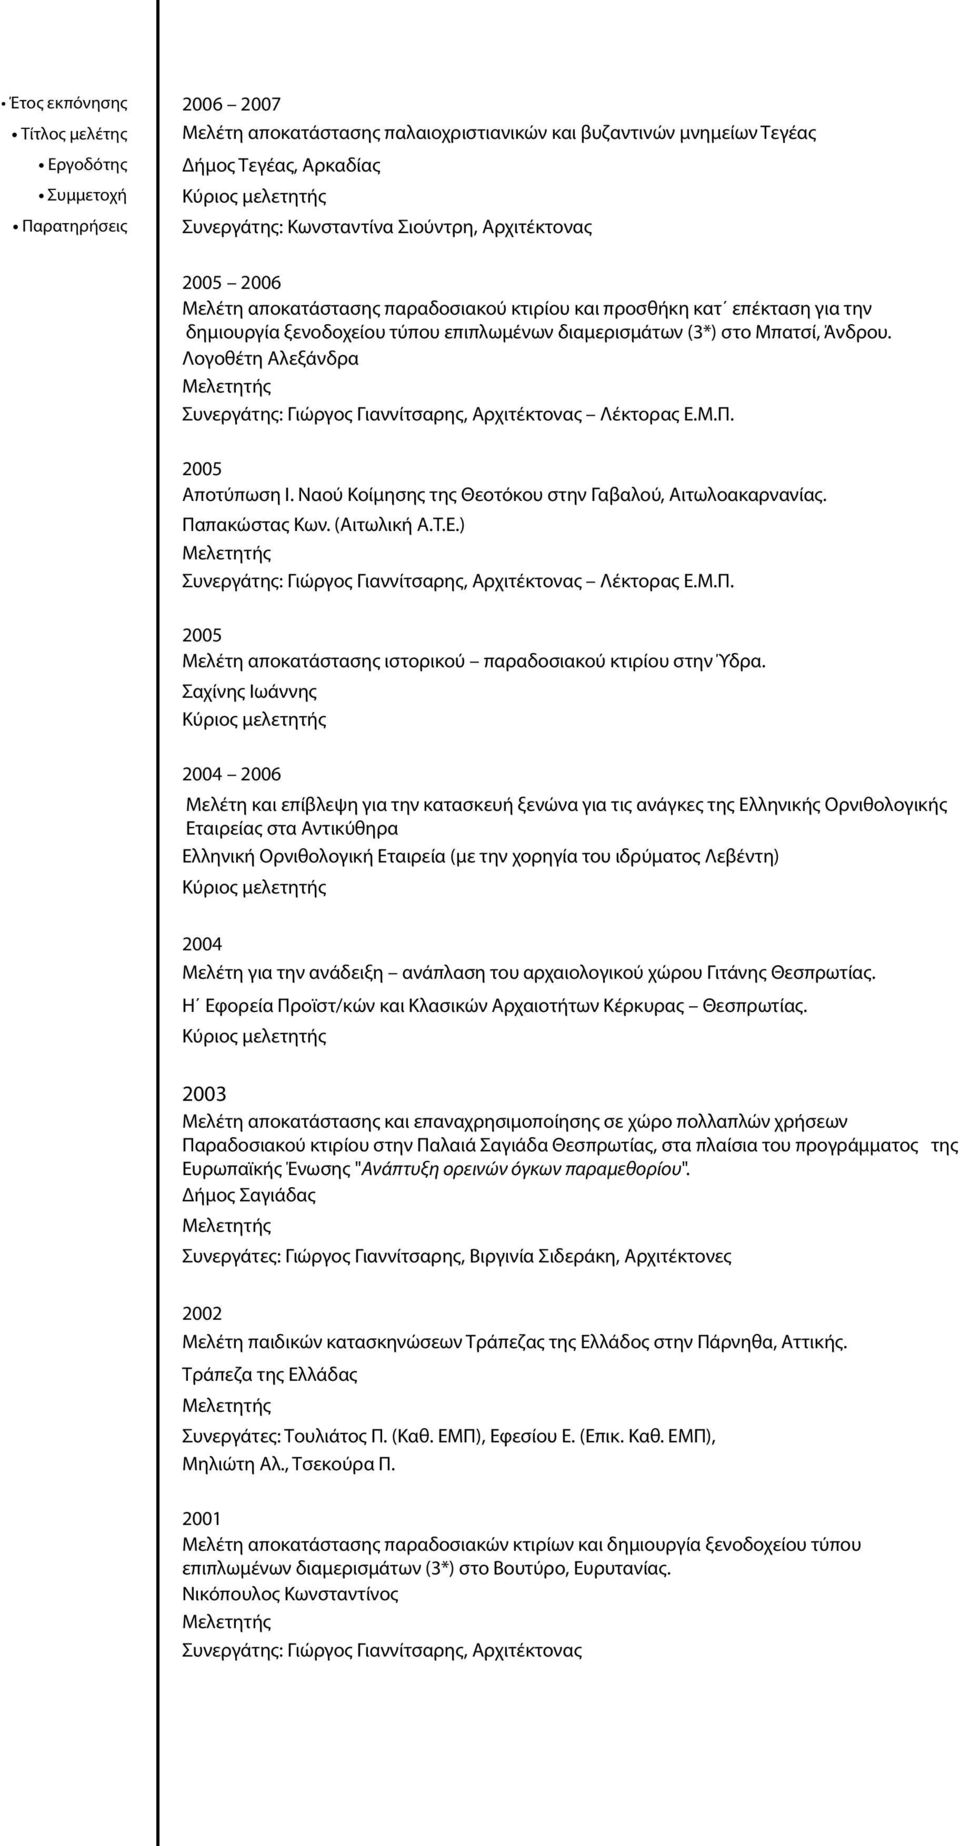 Λογοθέτη Αλεξάνδρα Συνεργάτης: Γιώργος Γιαννίτσαρης, Αρχιτέκτονας Λέκτορας Ε.Μ.Π. 2005 Αποτύπωση Ι. Ναού Κοίμησης της Θεοτόκου στην Γαβαλού, Αιτωλοακαρνανίας. Παπακώστας Κων. (Αιτωλική Α.Τ.Ε.) Συνεργάτης: Γιώργος Γιαννίτσαρης, Αρχιτέκτονας Λέκτορας Ε.